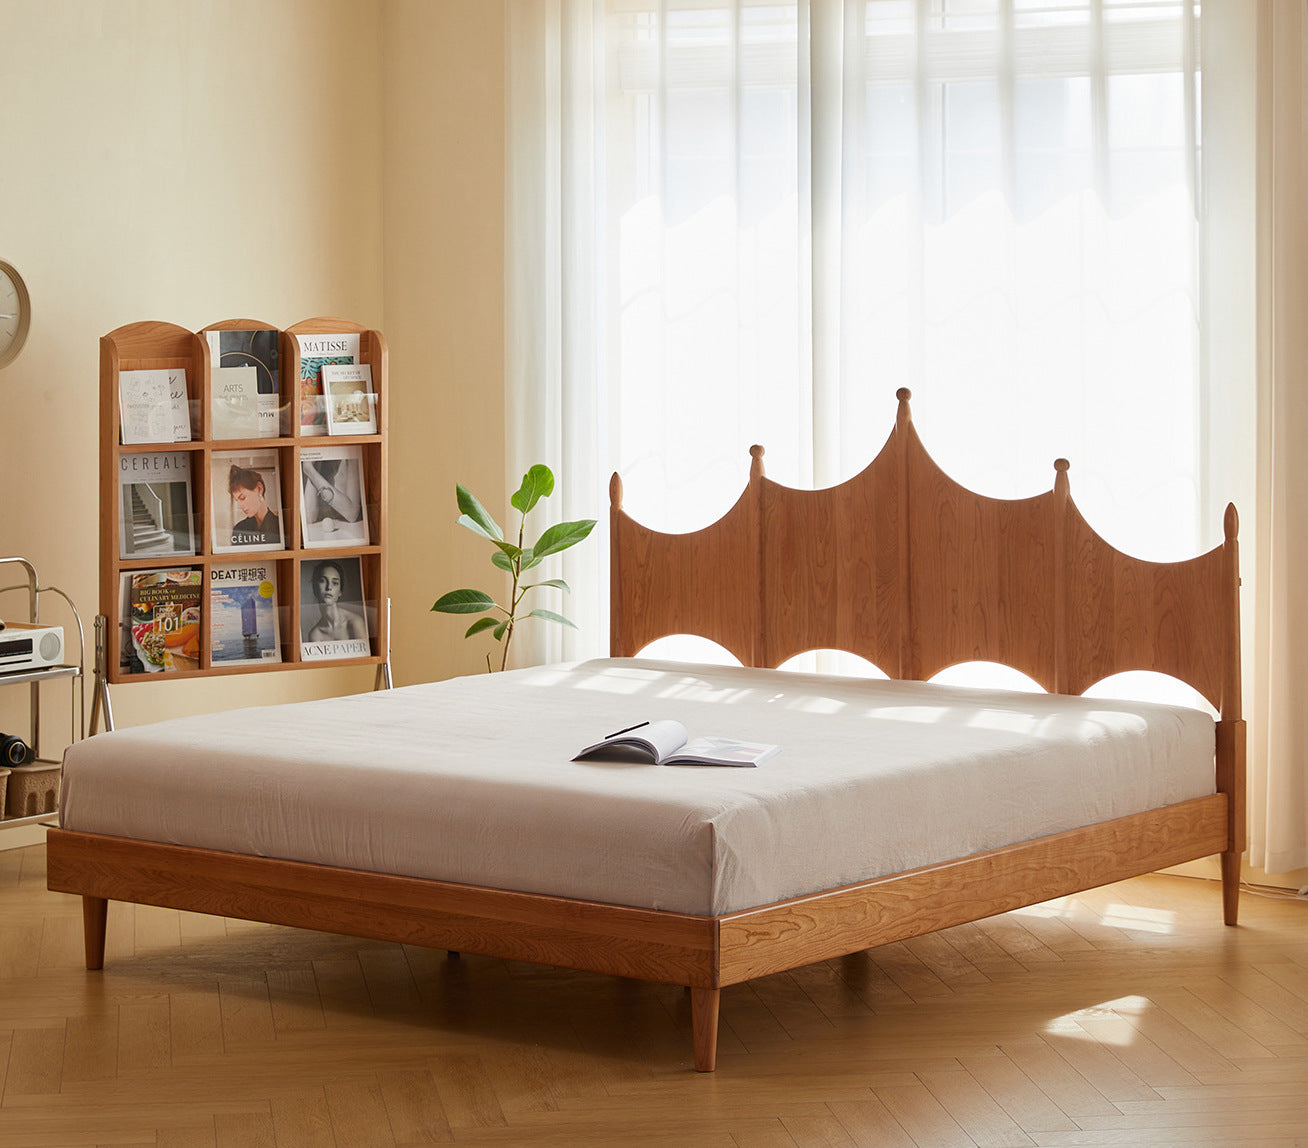 هيكل سرير من خشب الكرز، سرير بحجم كينج من خشب الكرز